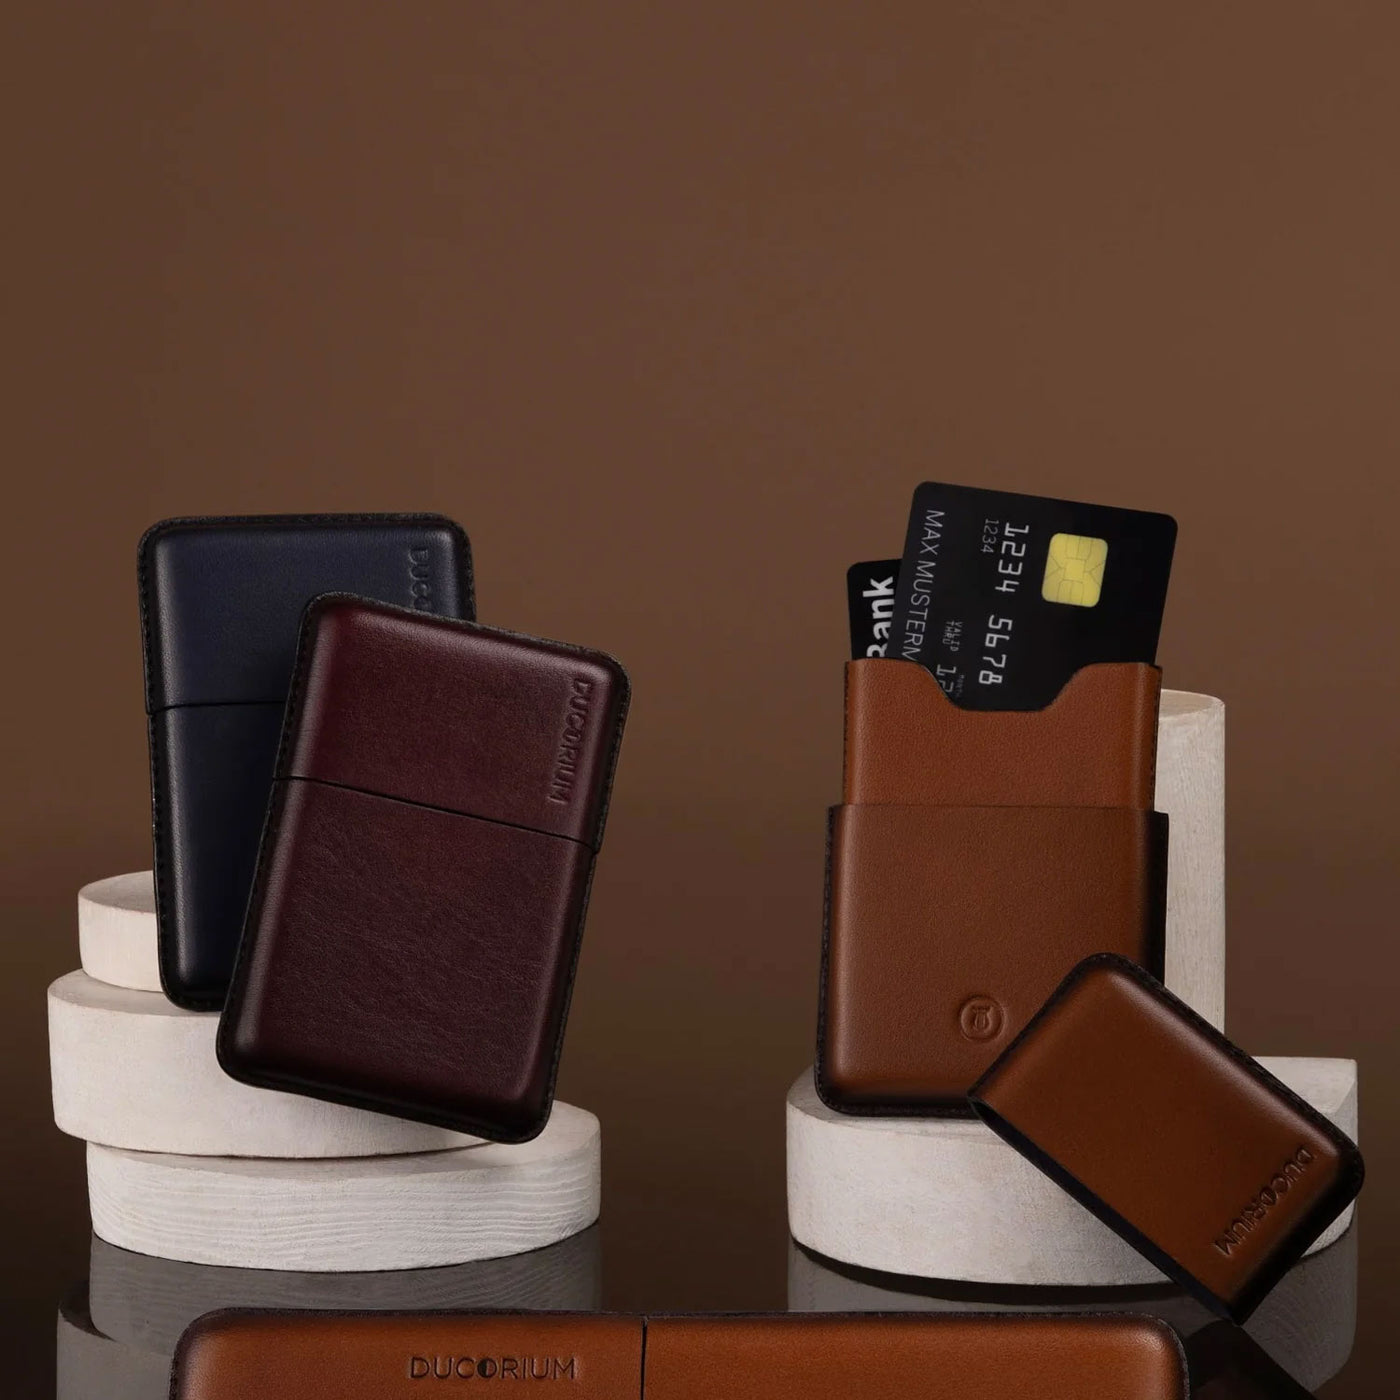 Lapis Bard Ducorium Moulded Card Case - Cognac 13